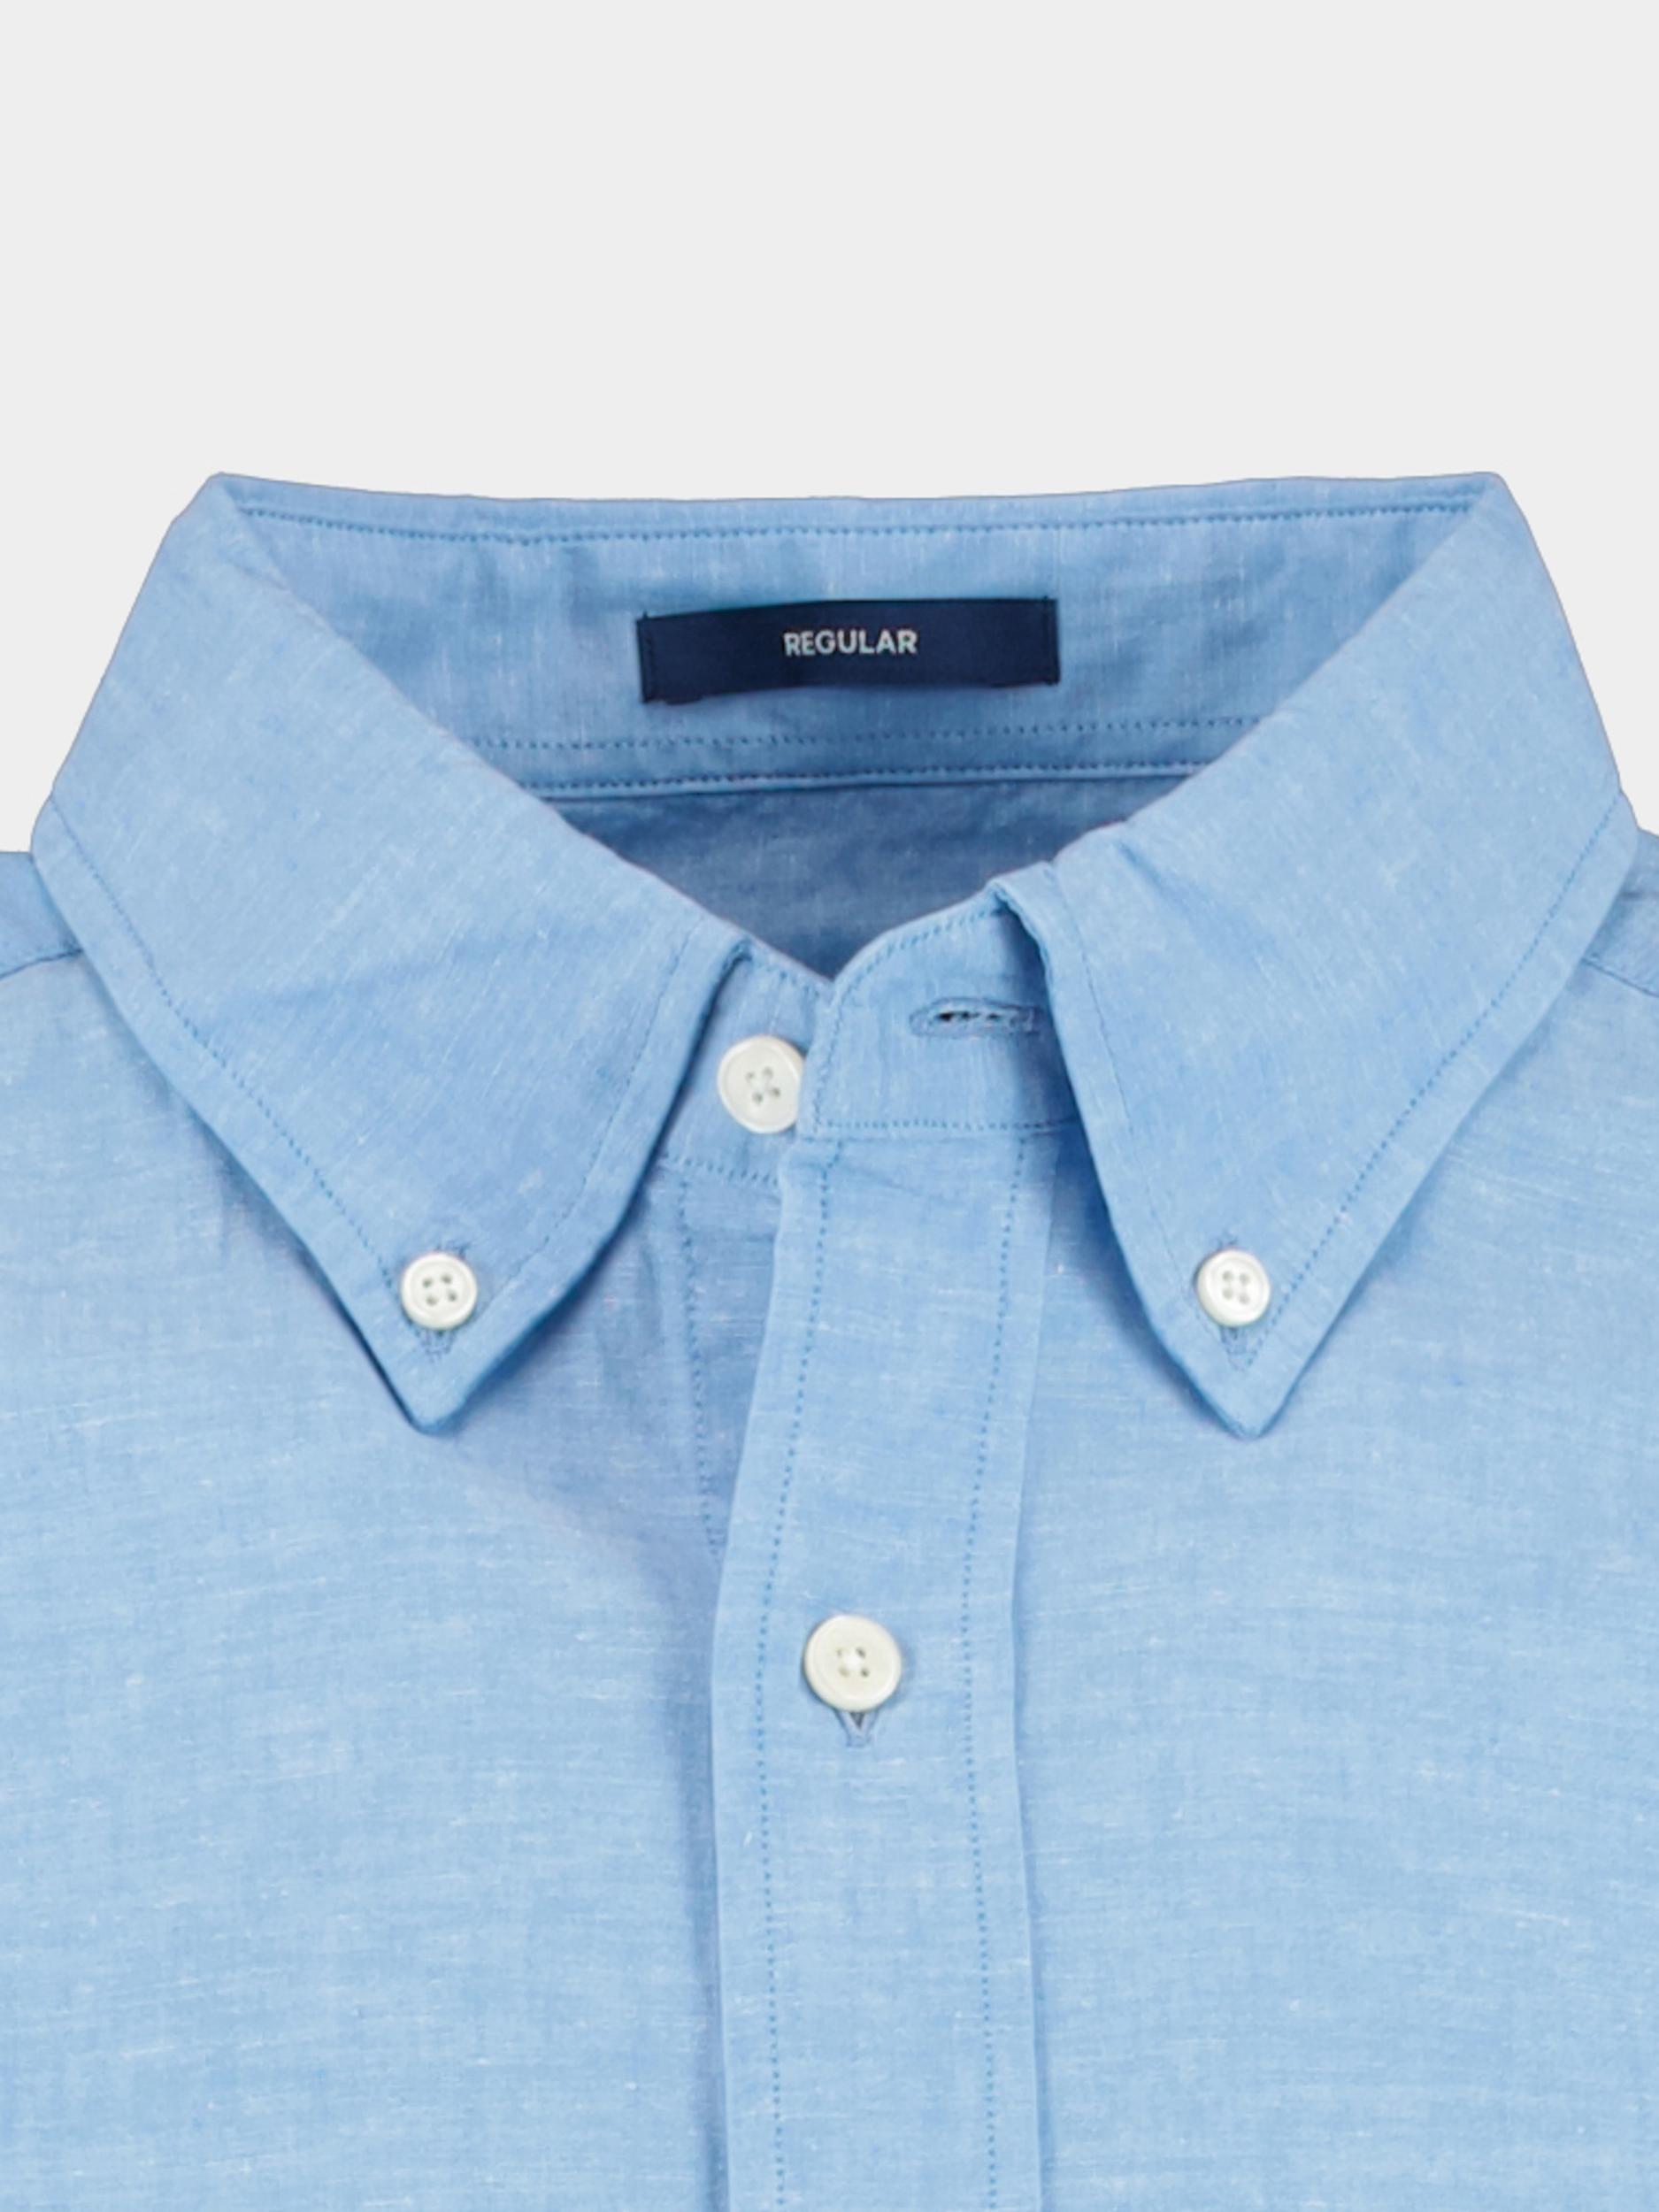 Gant Casual hemd korte mouw Blauw Reg Cotton Linen SS Shirt 3230053/471